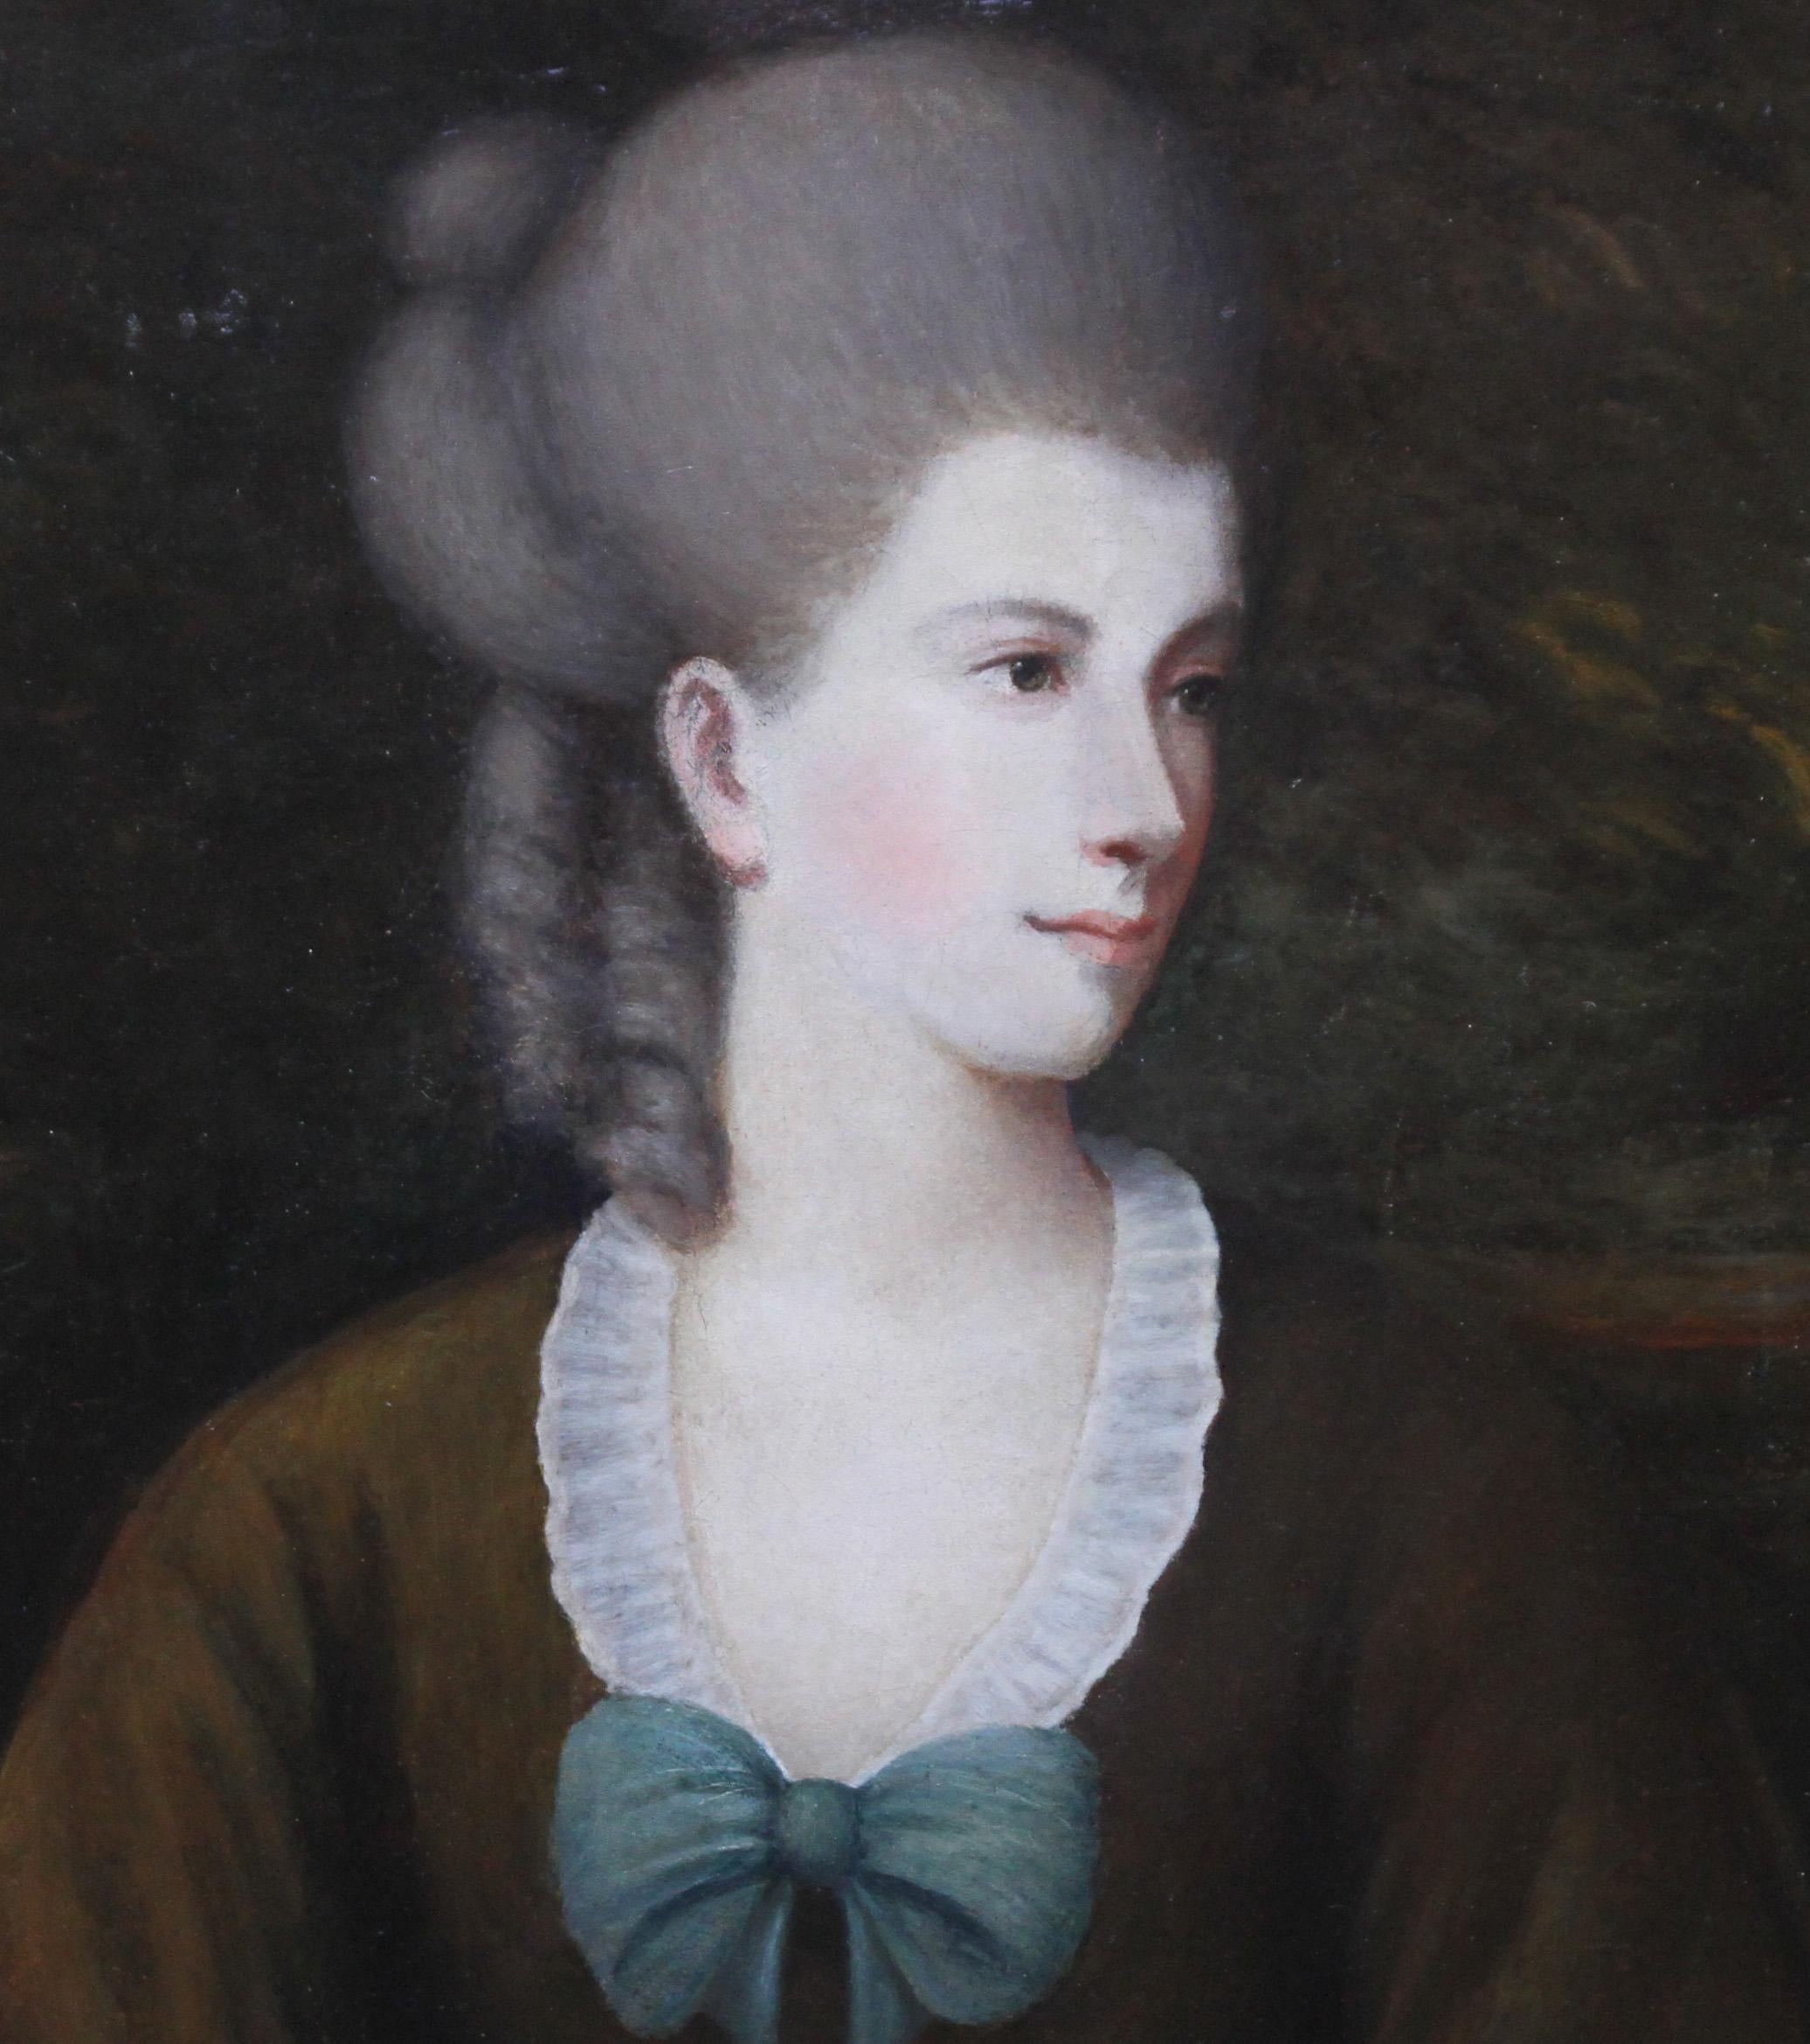 Dieses prächtige britische Porträt-Ölgemälde eines alten Meisters aus dem 18. Jahrhundert wird Matthew William Peters zugeschrieben. CIRCA 1780 gemalt, handelt es sich um ein schönes Halbporträt einer nach links blickenden Frau. Sie hat eine schöne